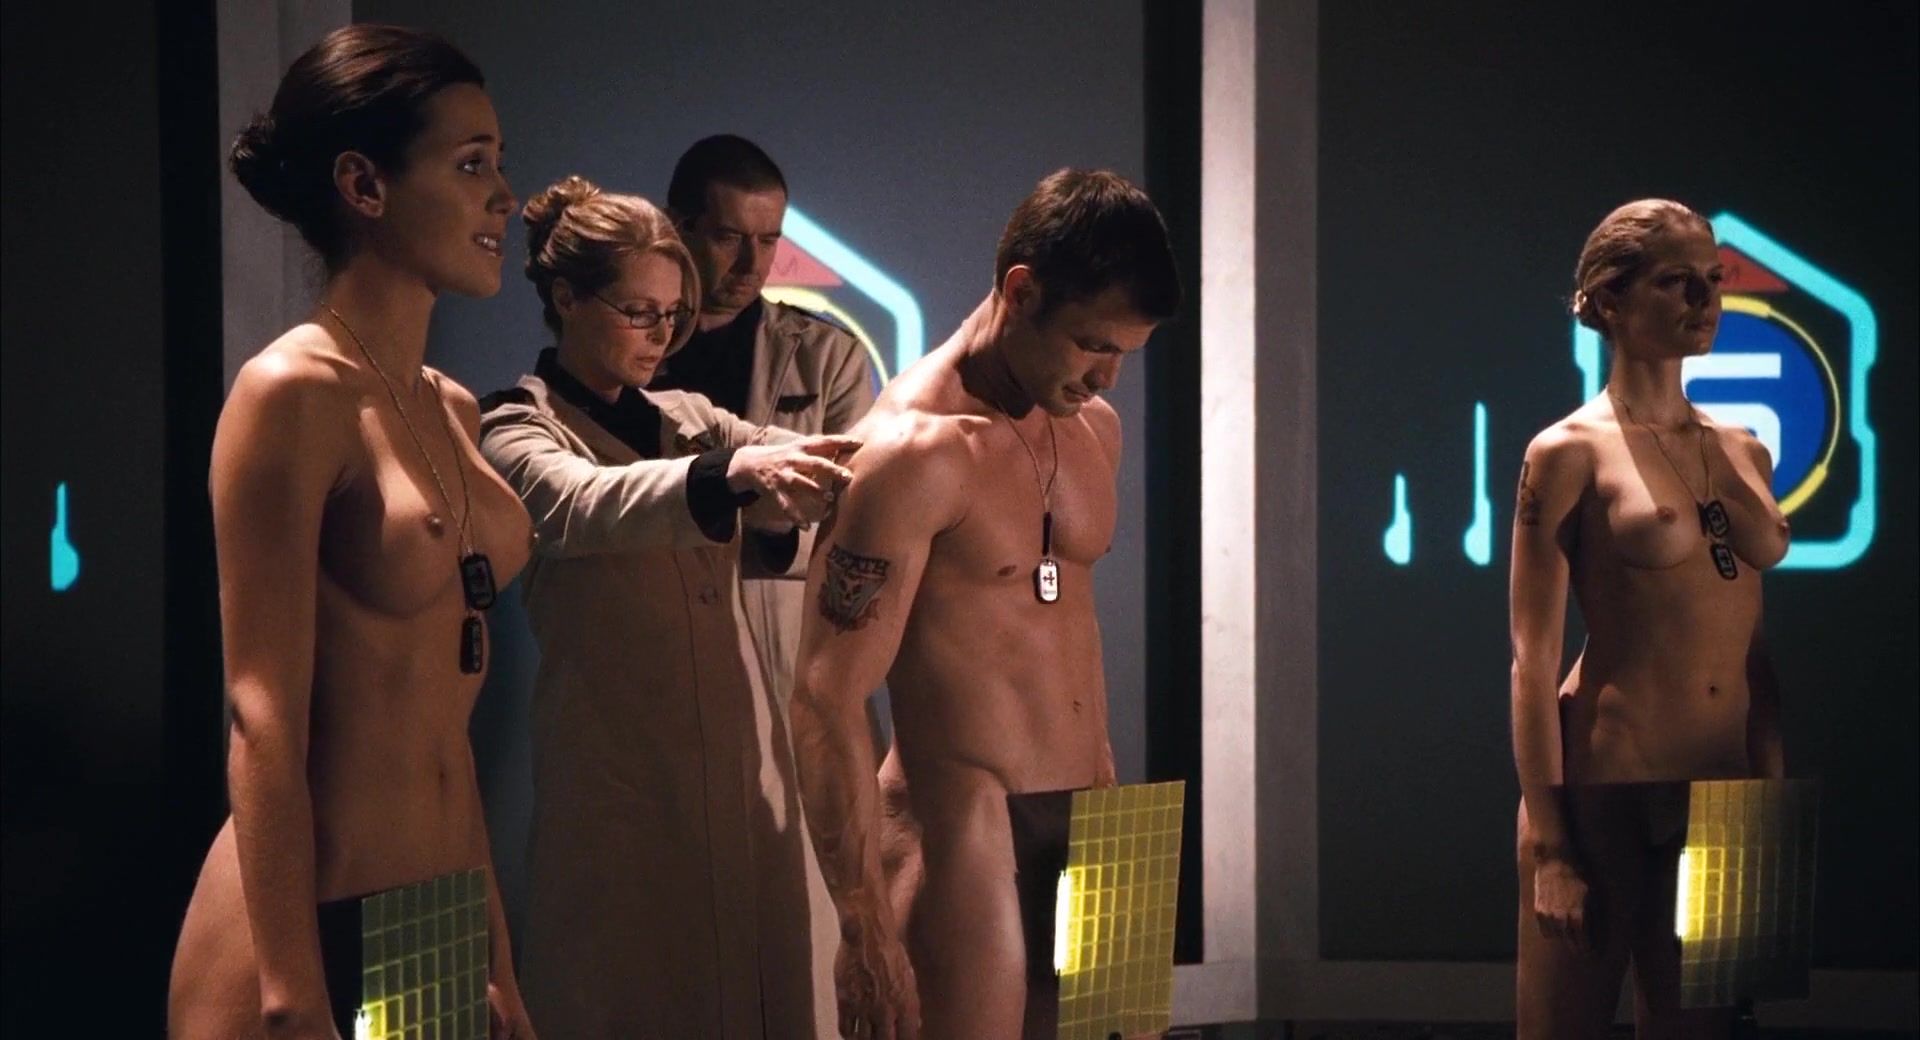 Hunks Nudity Video | Cecile Breccia, Tanya van Graan, Nicole Tupper - Starship Troopers 3 (2008) Couple